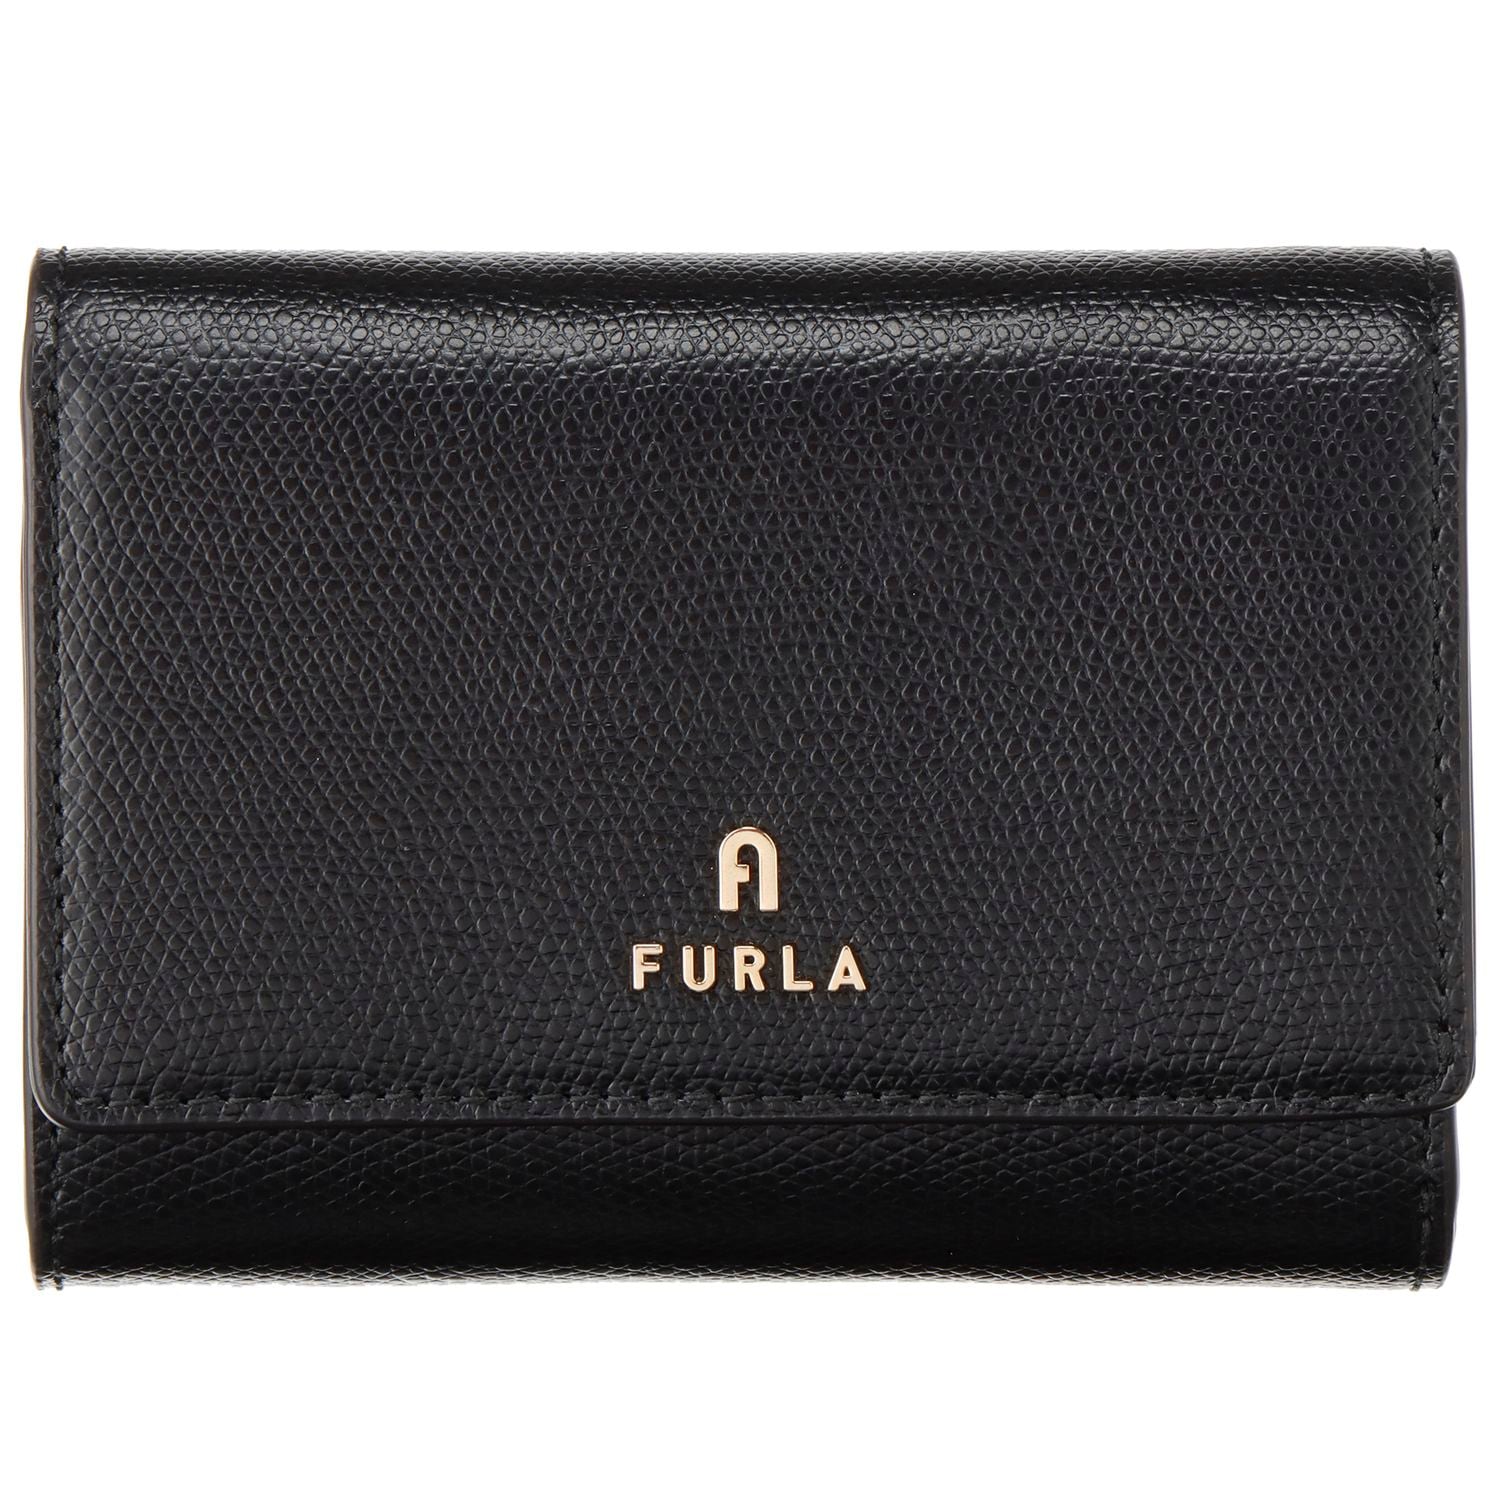 残り僅か‼︎新色 完売カラー 新品 FURLA 折り財布 グレー